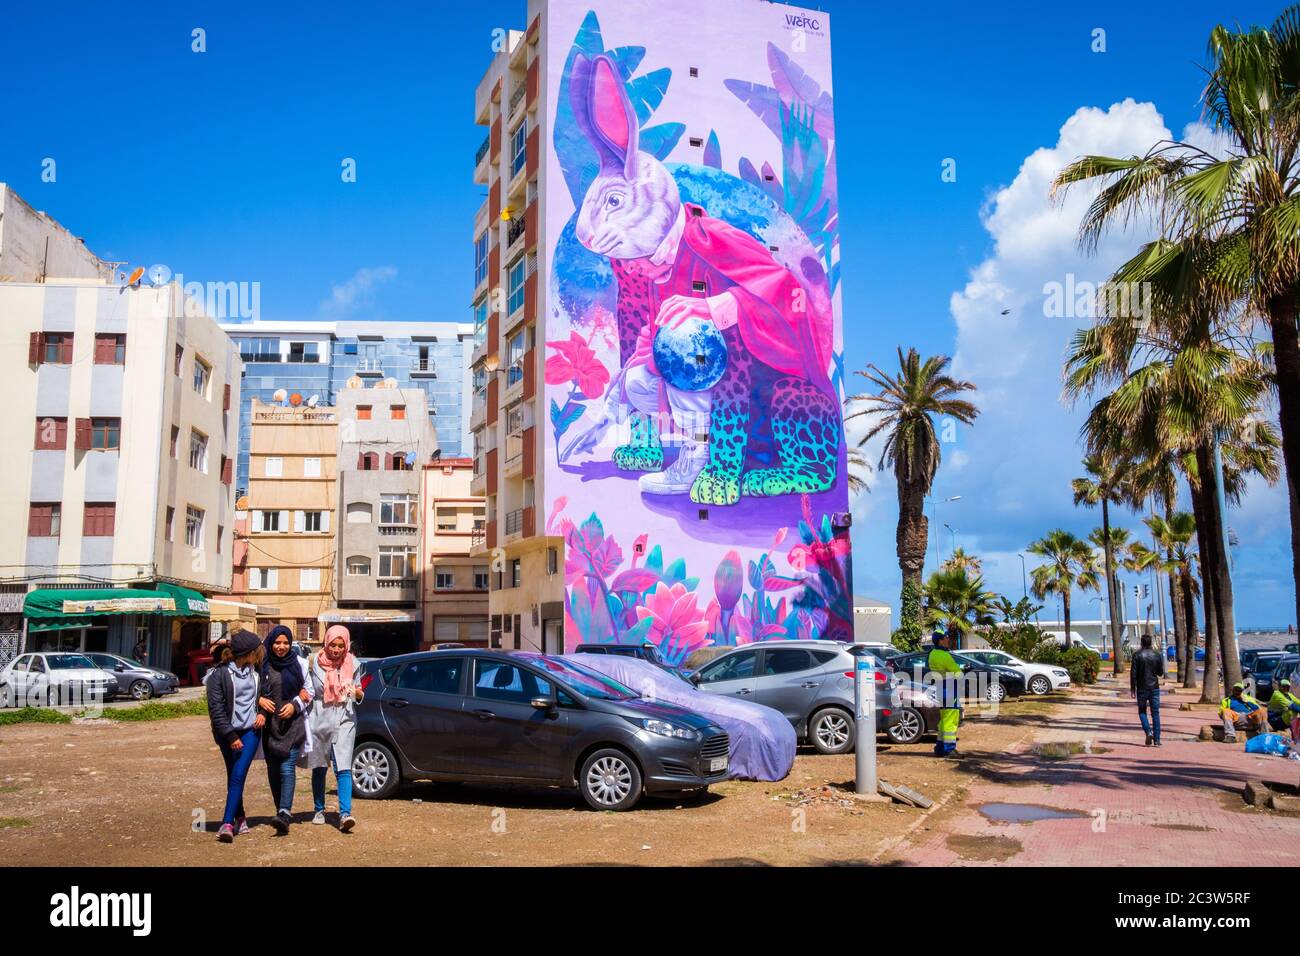 Maroc, Casablanca: Bâtiments et murale dans le boulevard Zerktouni. Trois filles marchant devant des bâtiments et une murale représentant un lapin géant, oeuvre de Mexica Banque D'Images